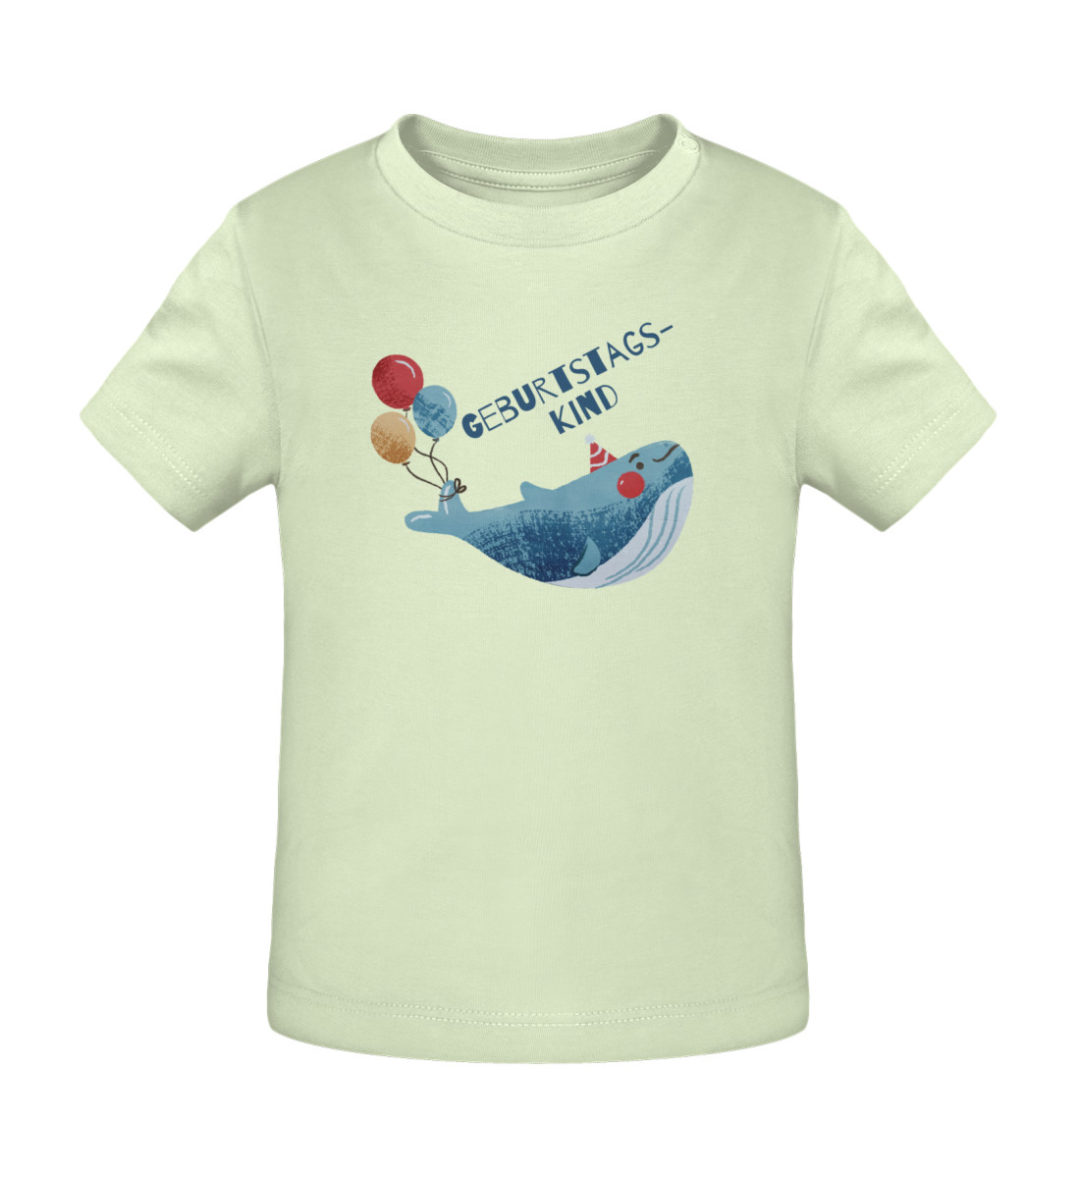 Geburtstagskind - Baby Creator T-Shirt ST/ST-7105